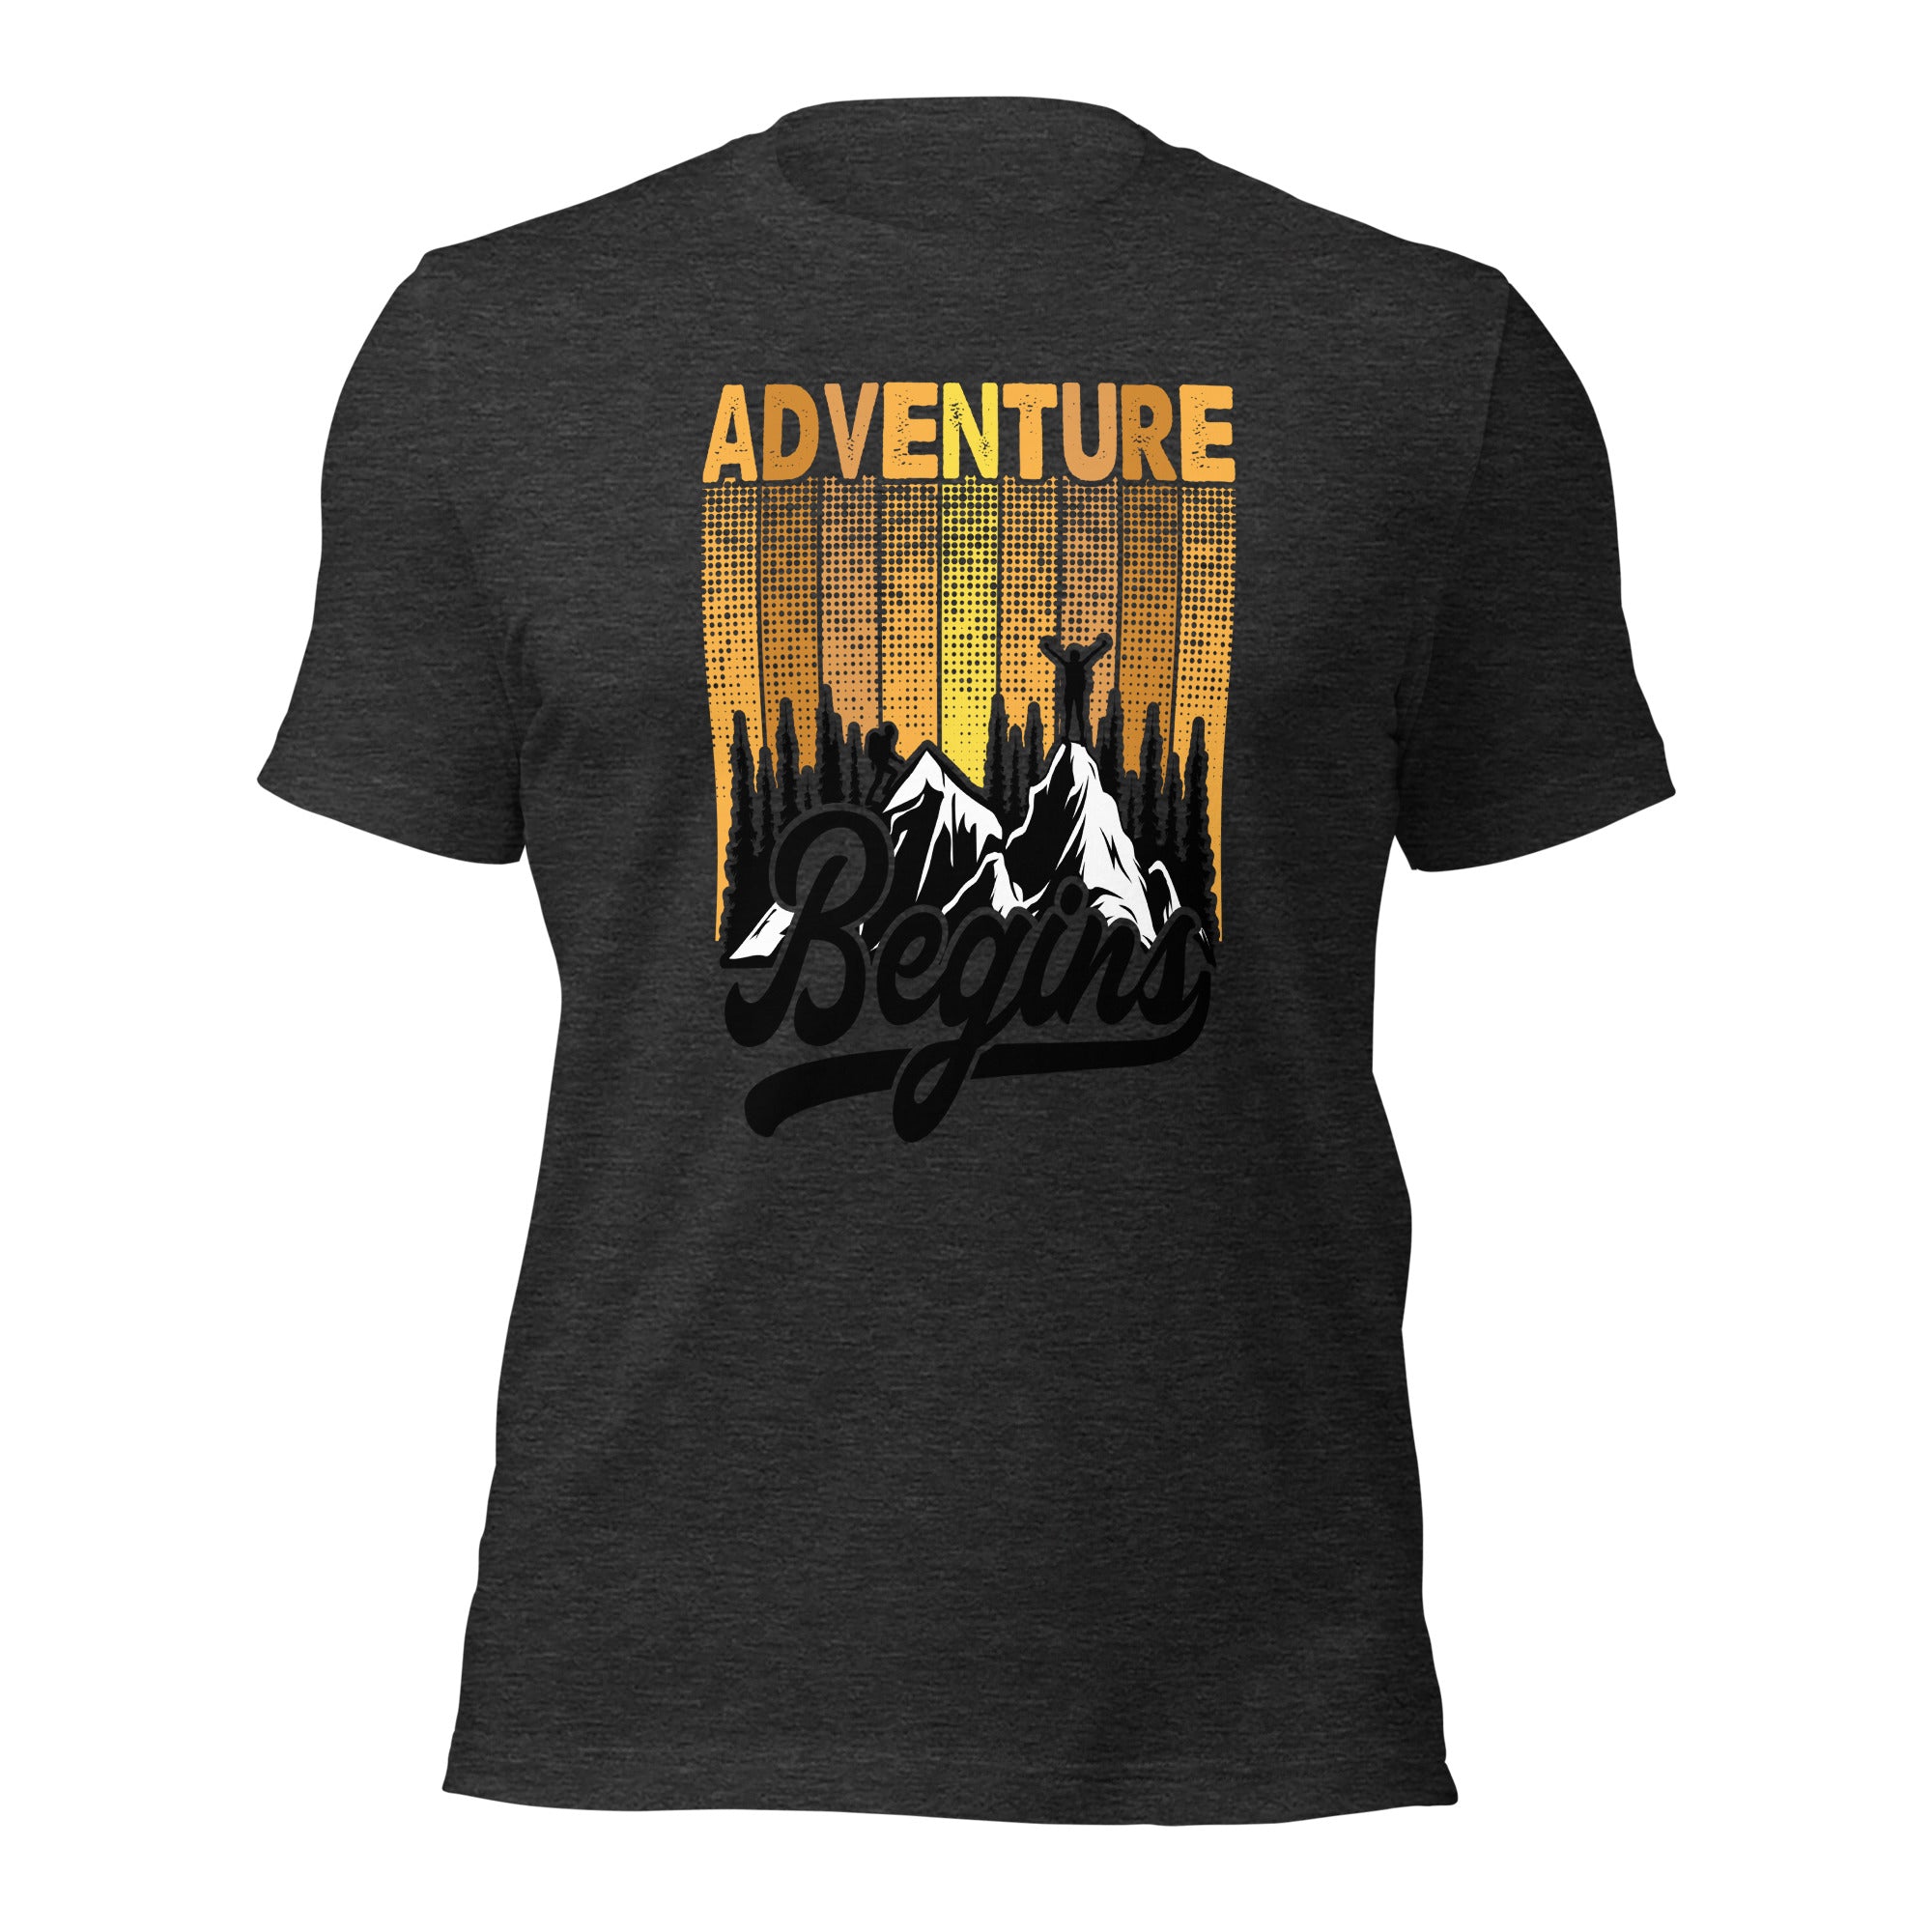 Adventure Begins T-Shirt